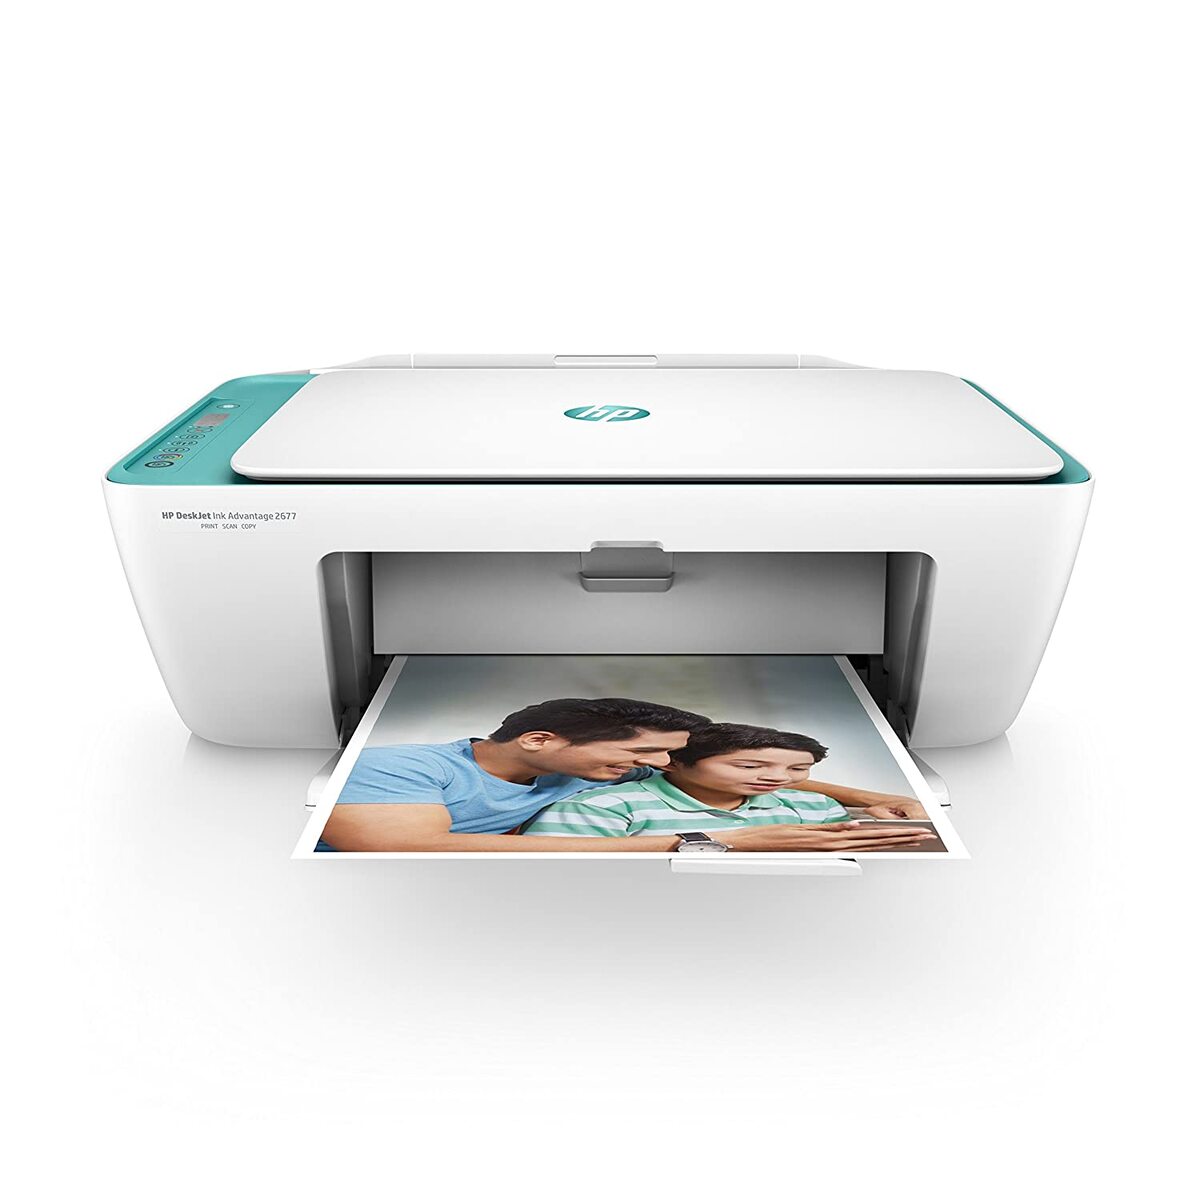 HP Inkjet All In One Printer 2677